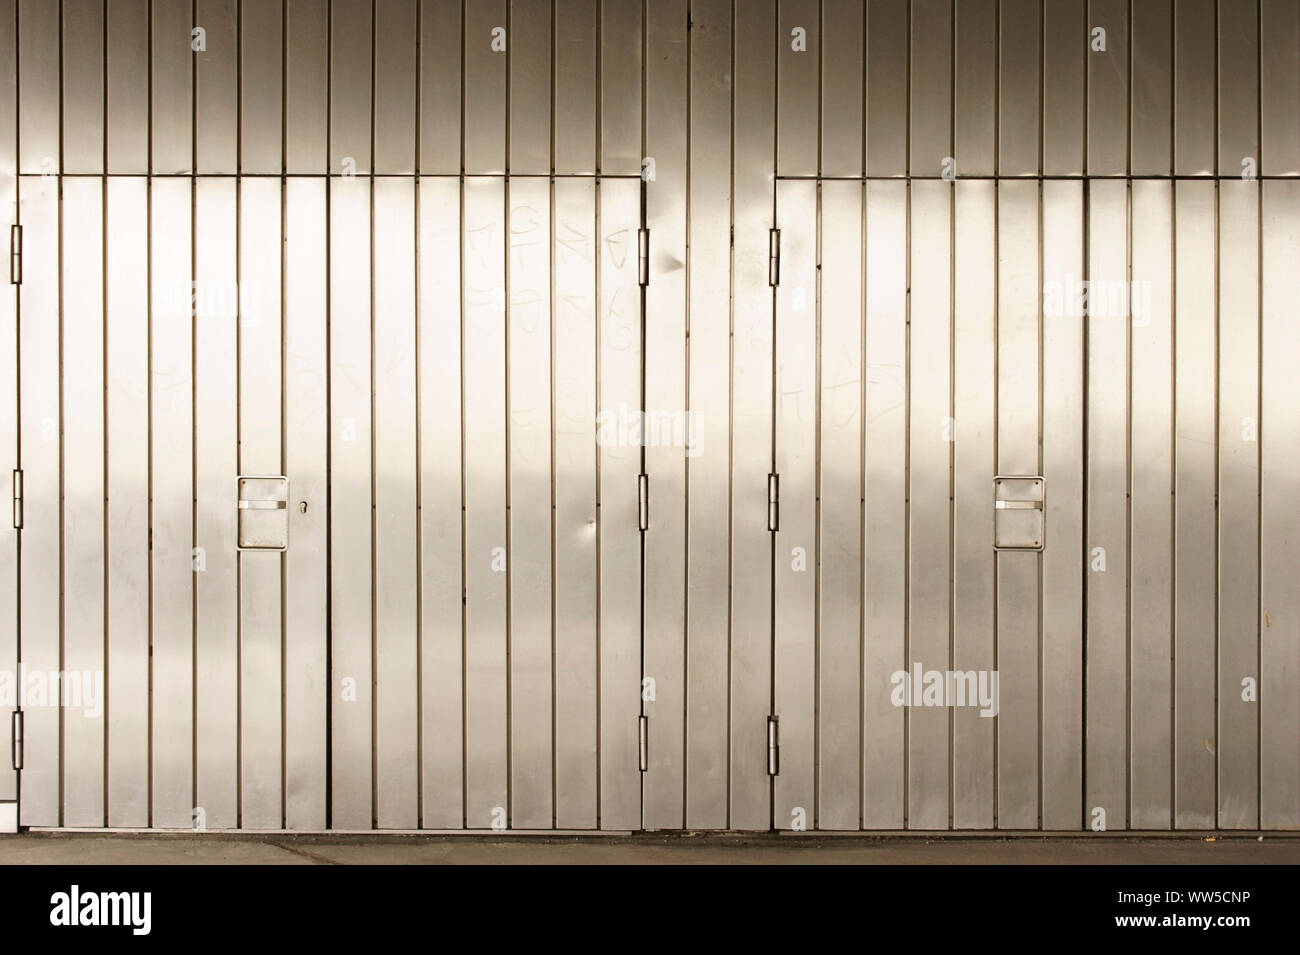 Un suggestivo stagno da parete in acciaio inox con porte chiuse, Foto Stock